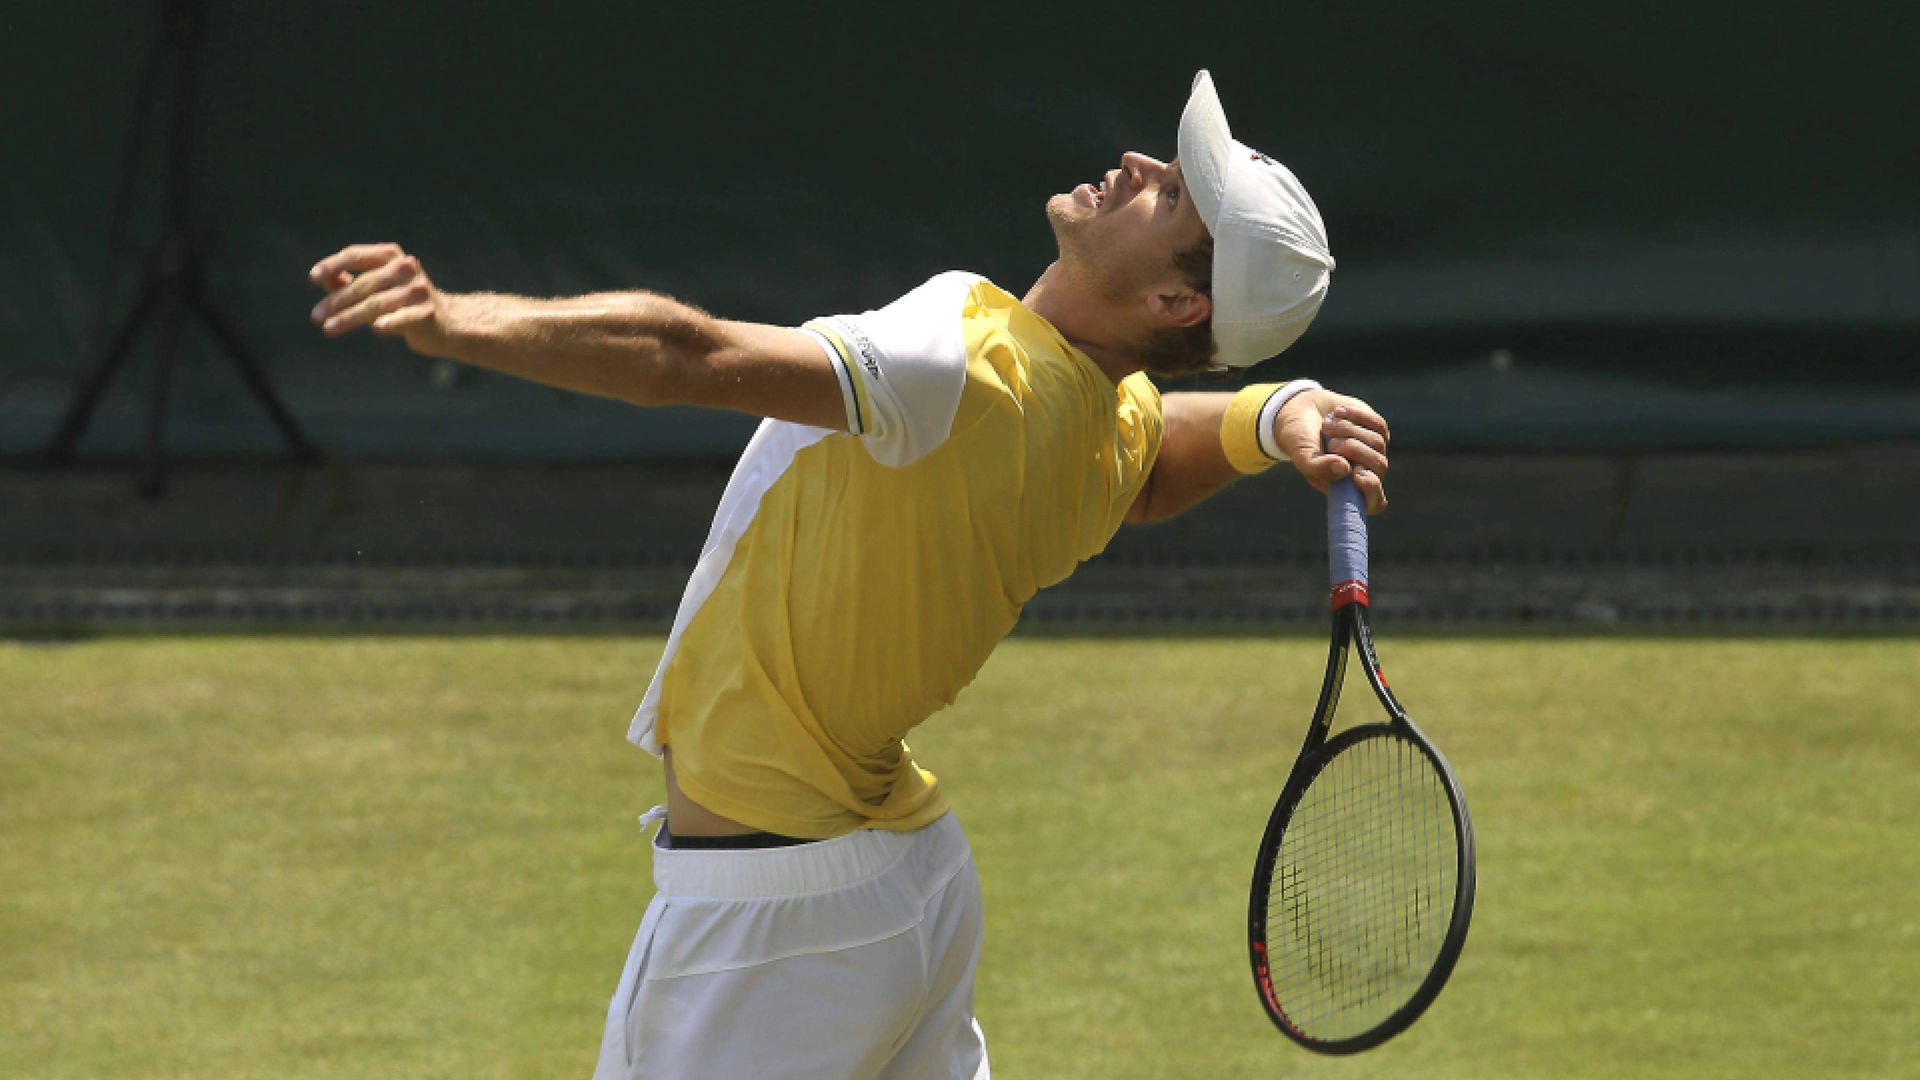 Tennis, ATP-Turnier in Halle Alexander Zverev besiegt Dominic Thiem souverän - auch Yannick Hanfmann weiter - Sport